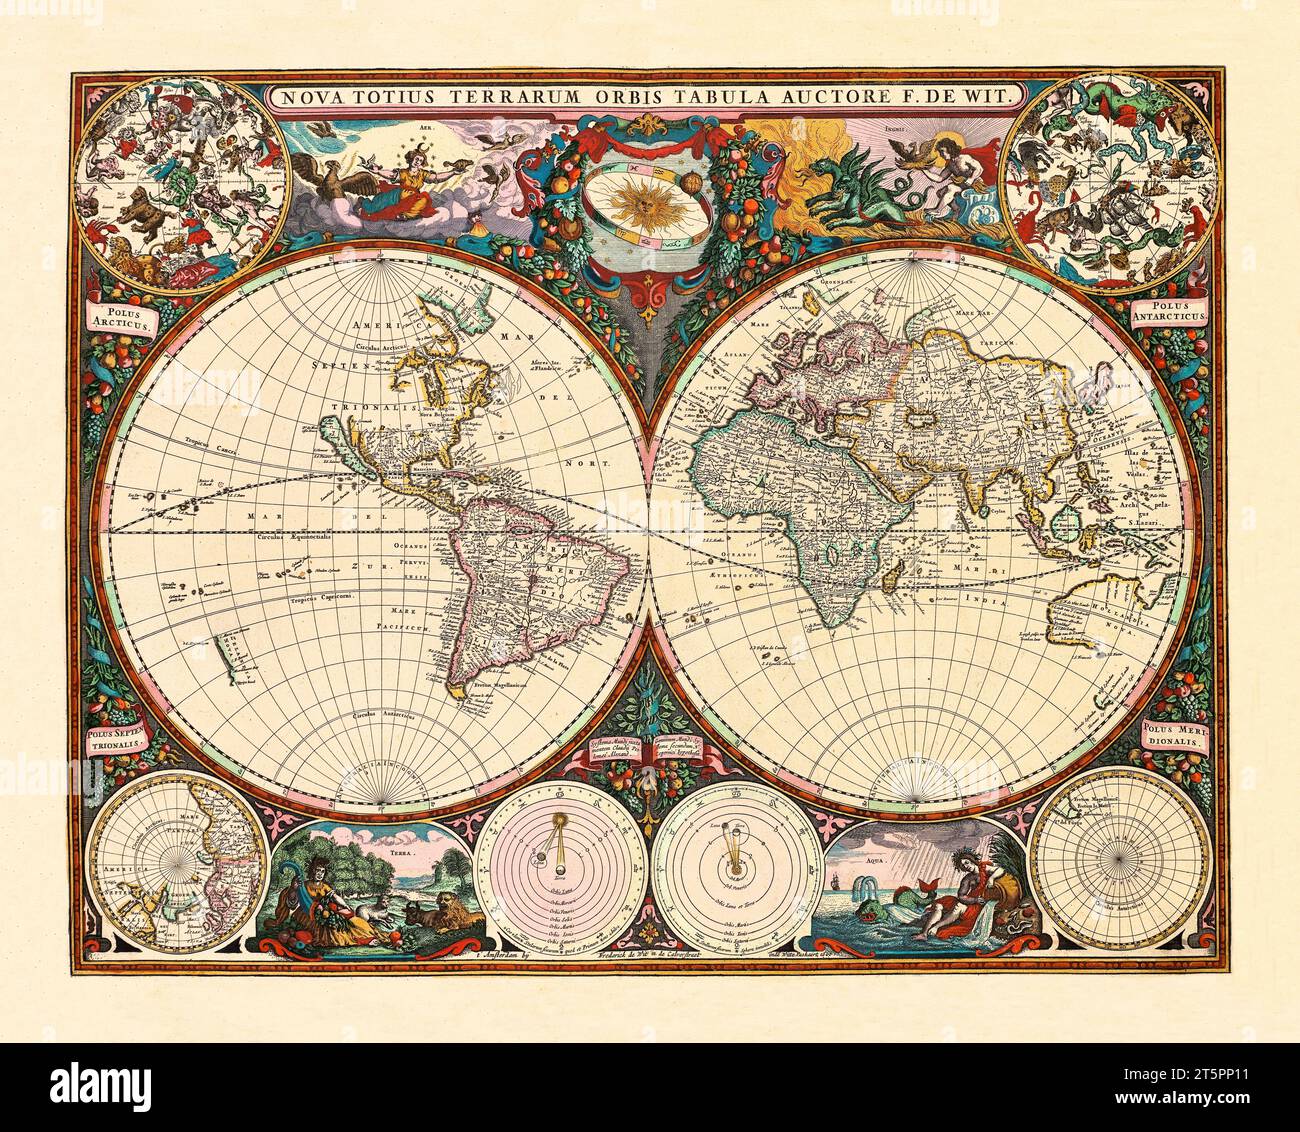 Vieux planisphère avec insert Zodiac. Par de Wit, publ. en 1660 Banque D'Images